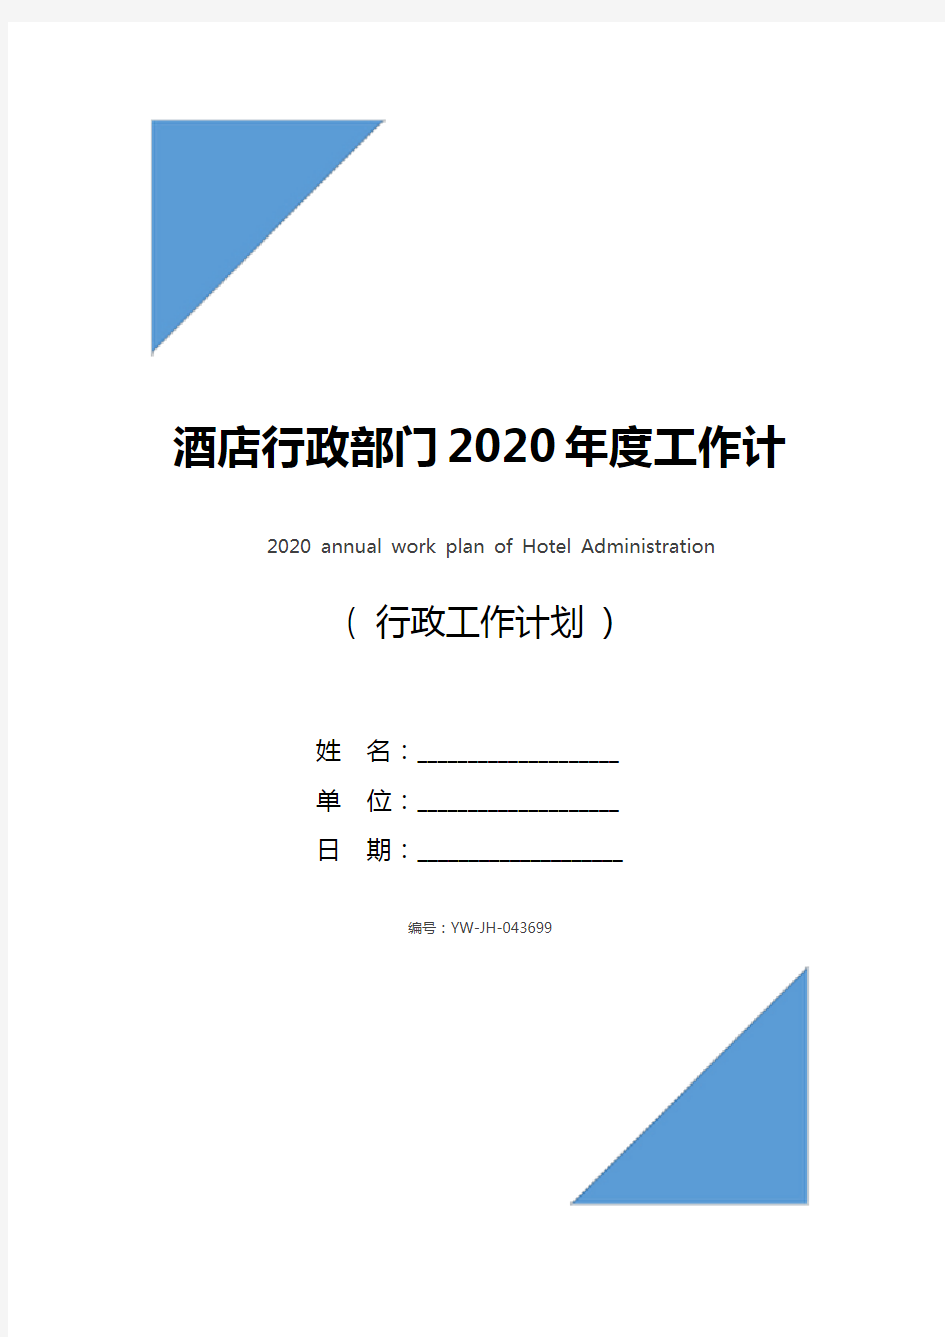 酒店行政部门2020年度工作计划